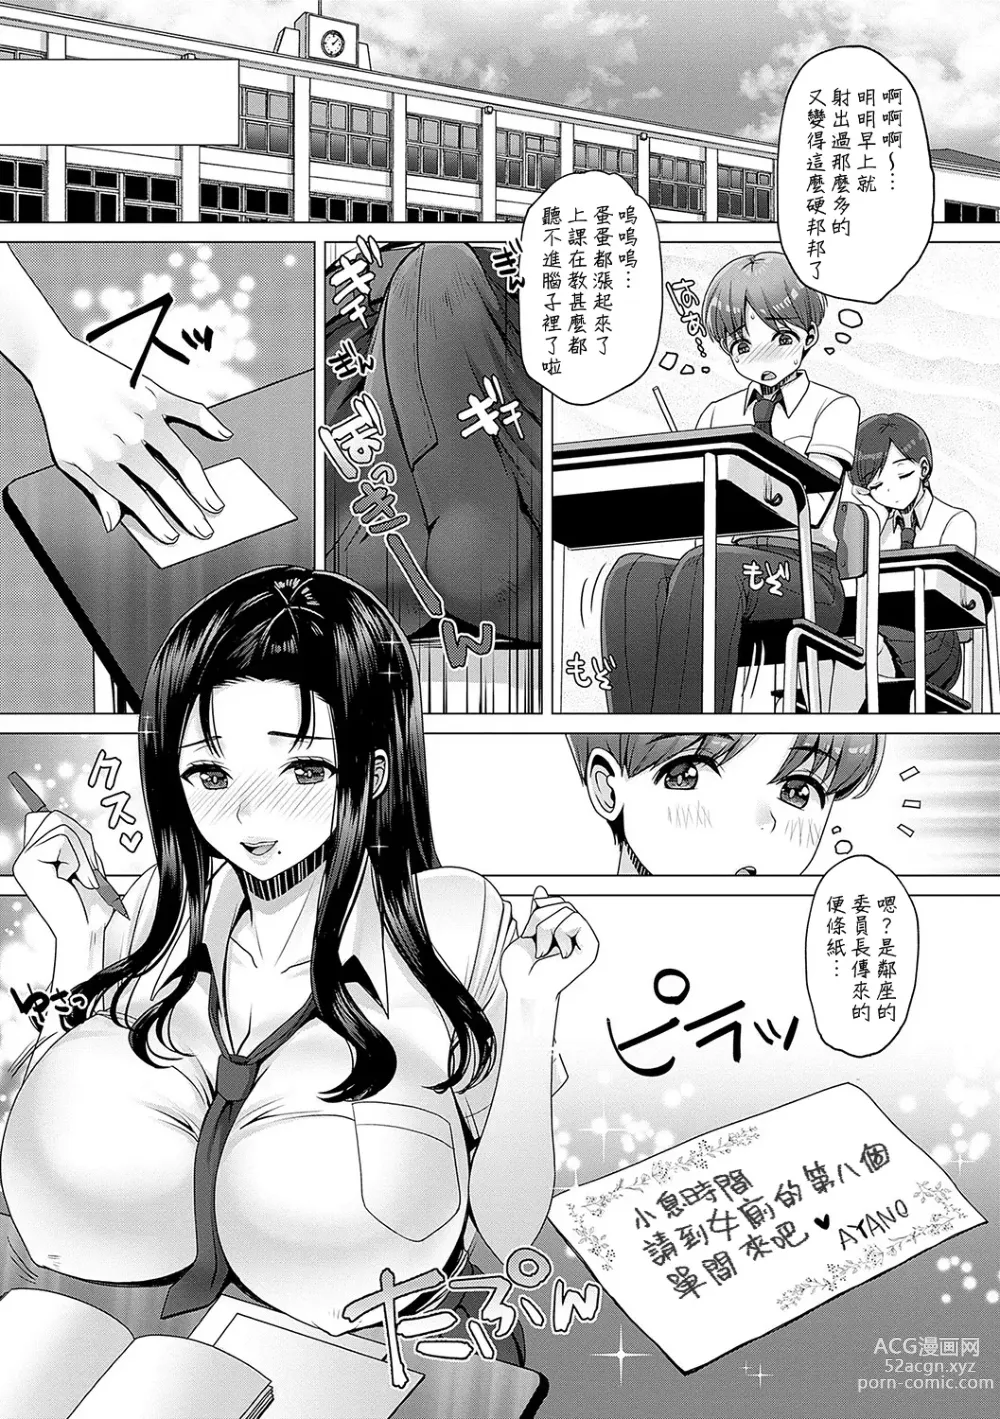 Page 5 of manga Amayakashi Gakuen no Amayakashi Gakuen SEIkatsu ♥